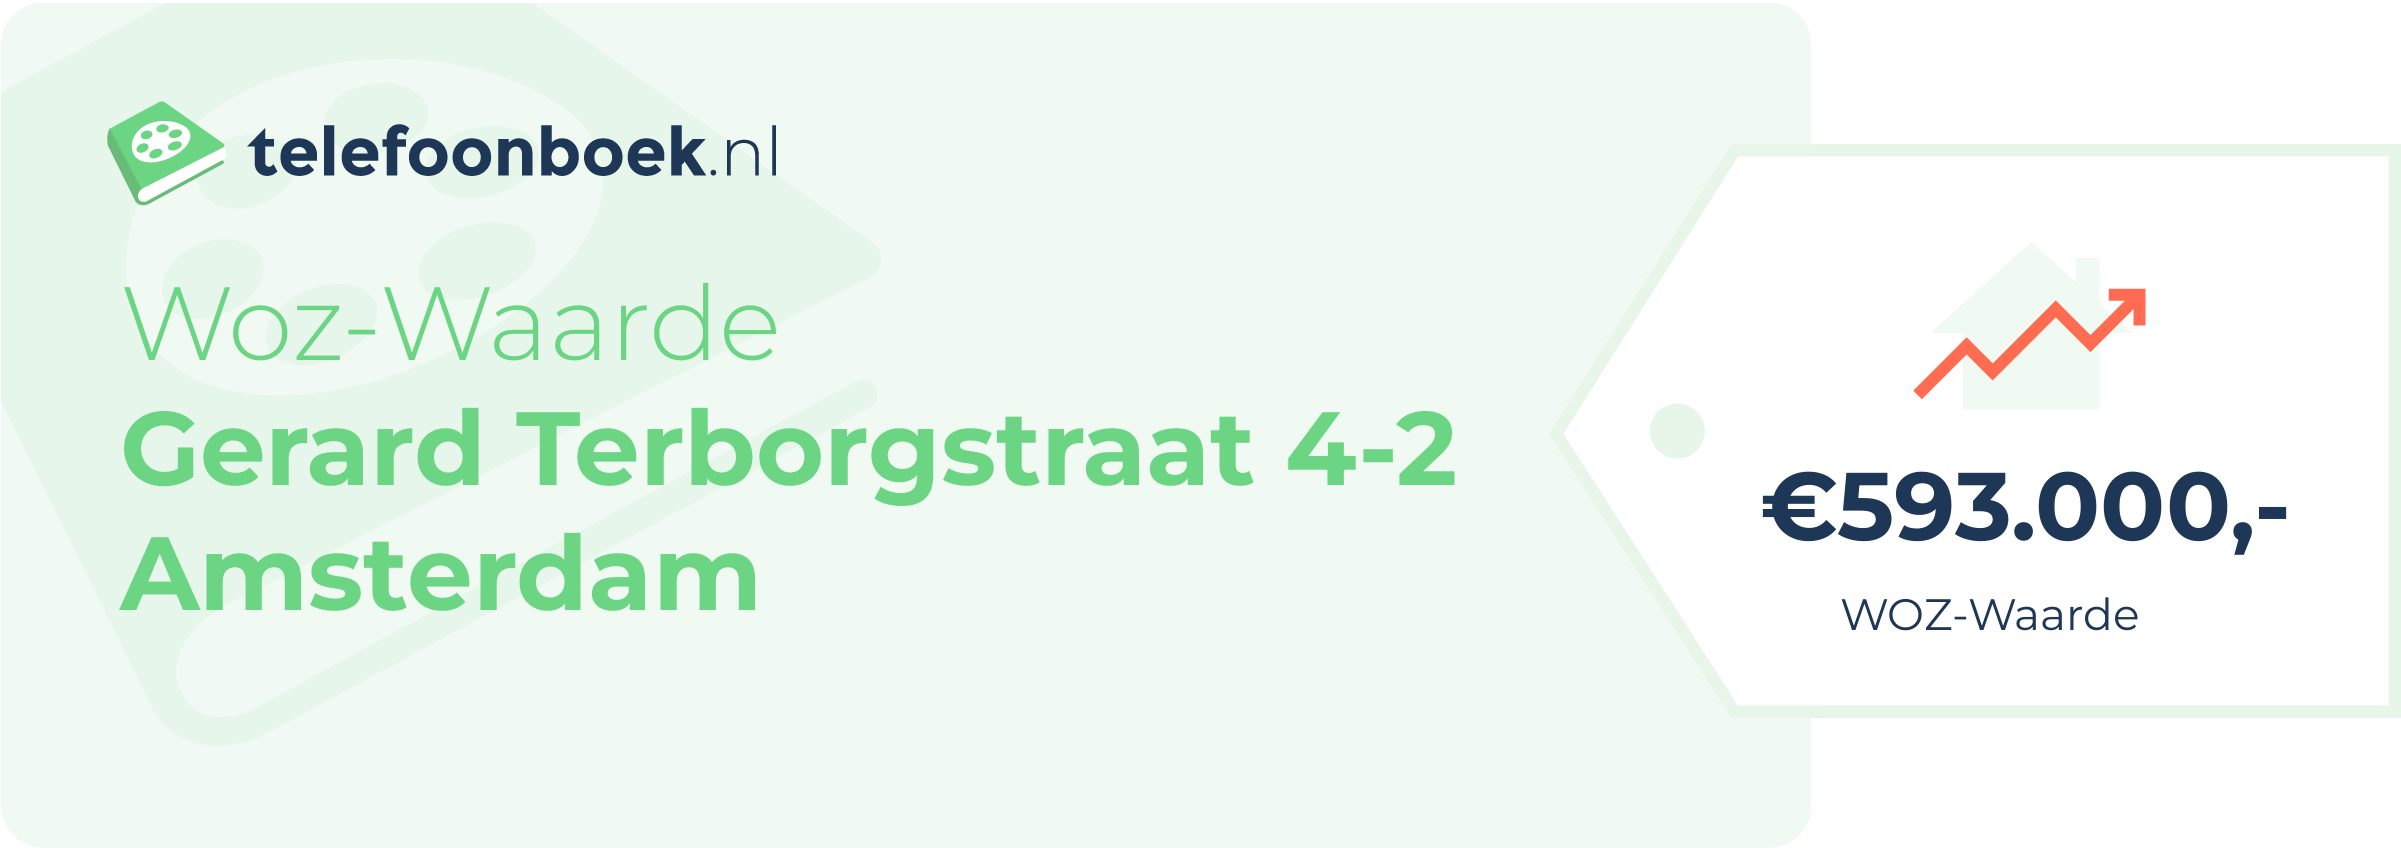 WOZ-waarde Gerard Terborgstraat 4-2 Amsterdam